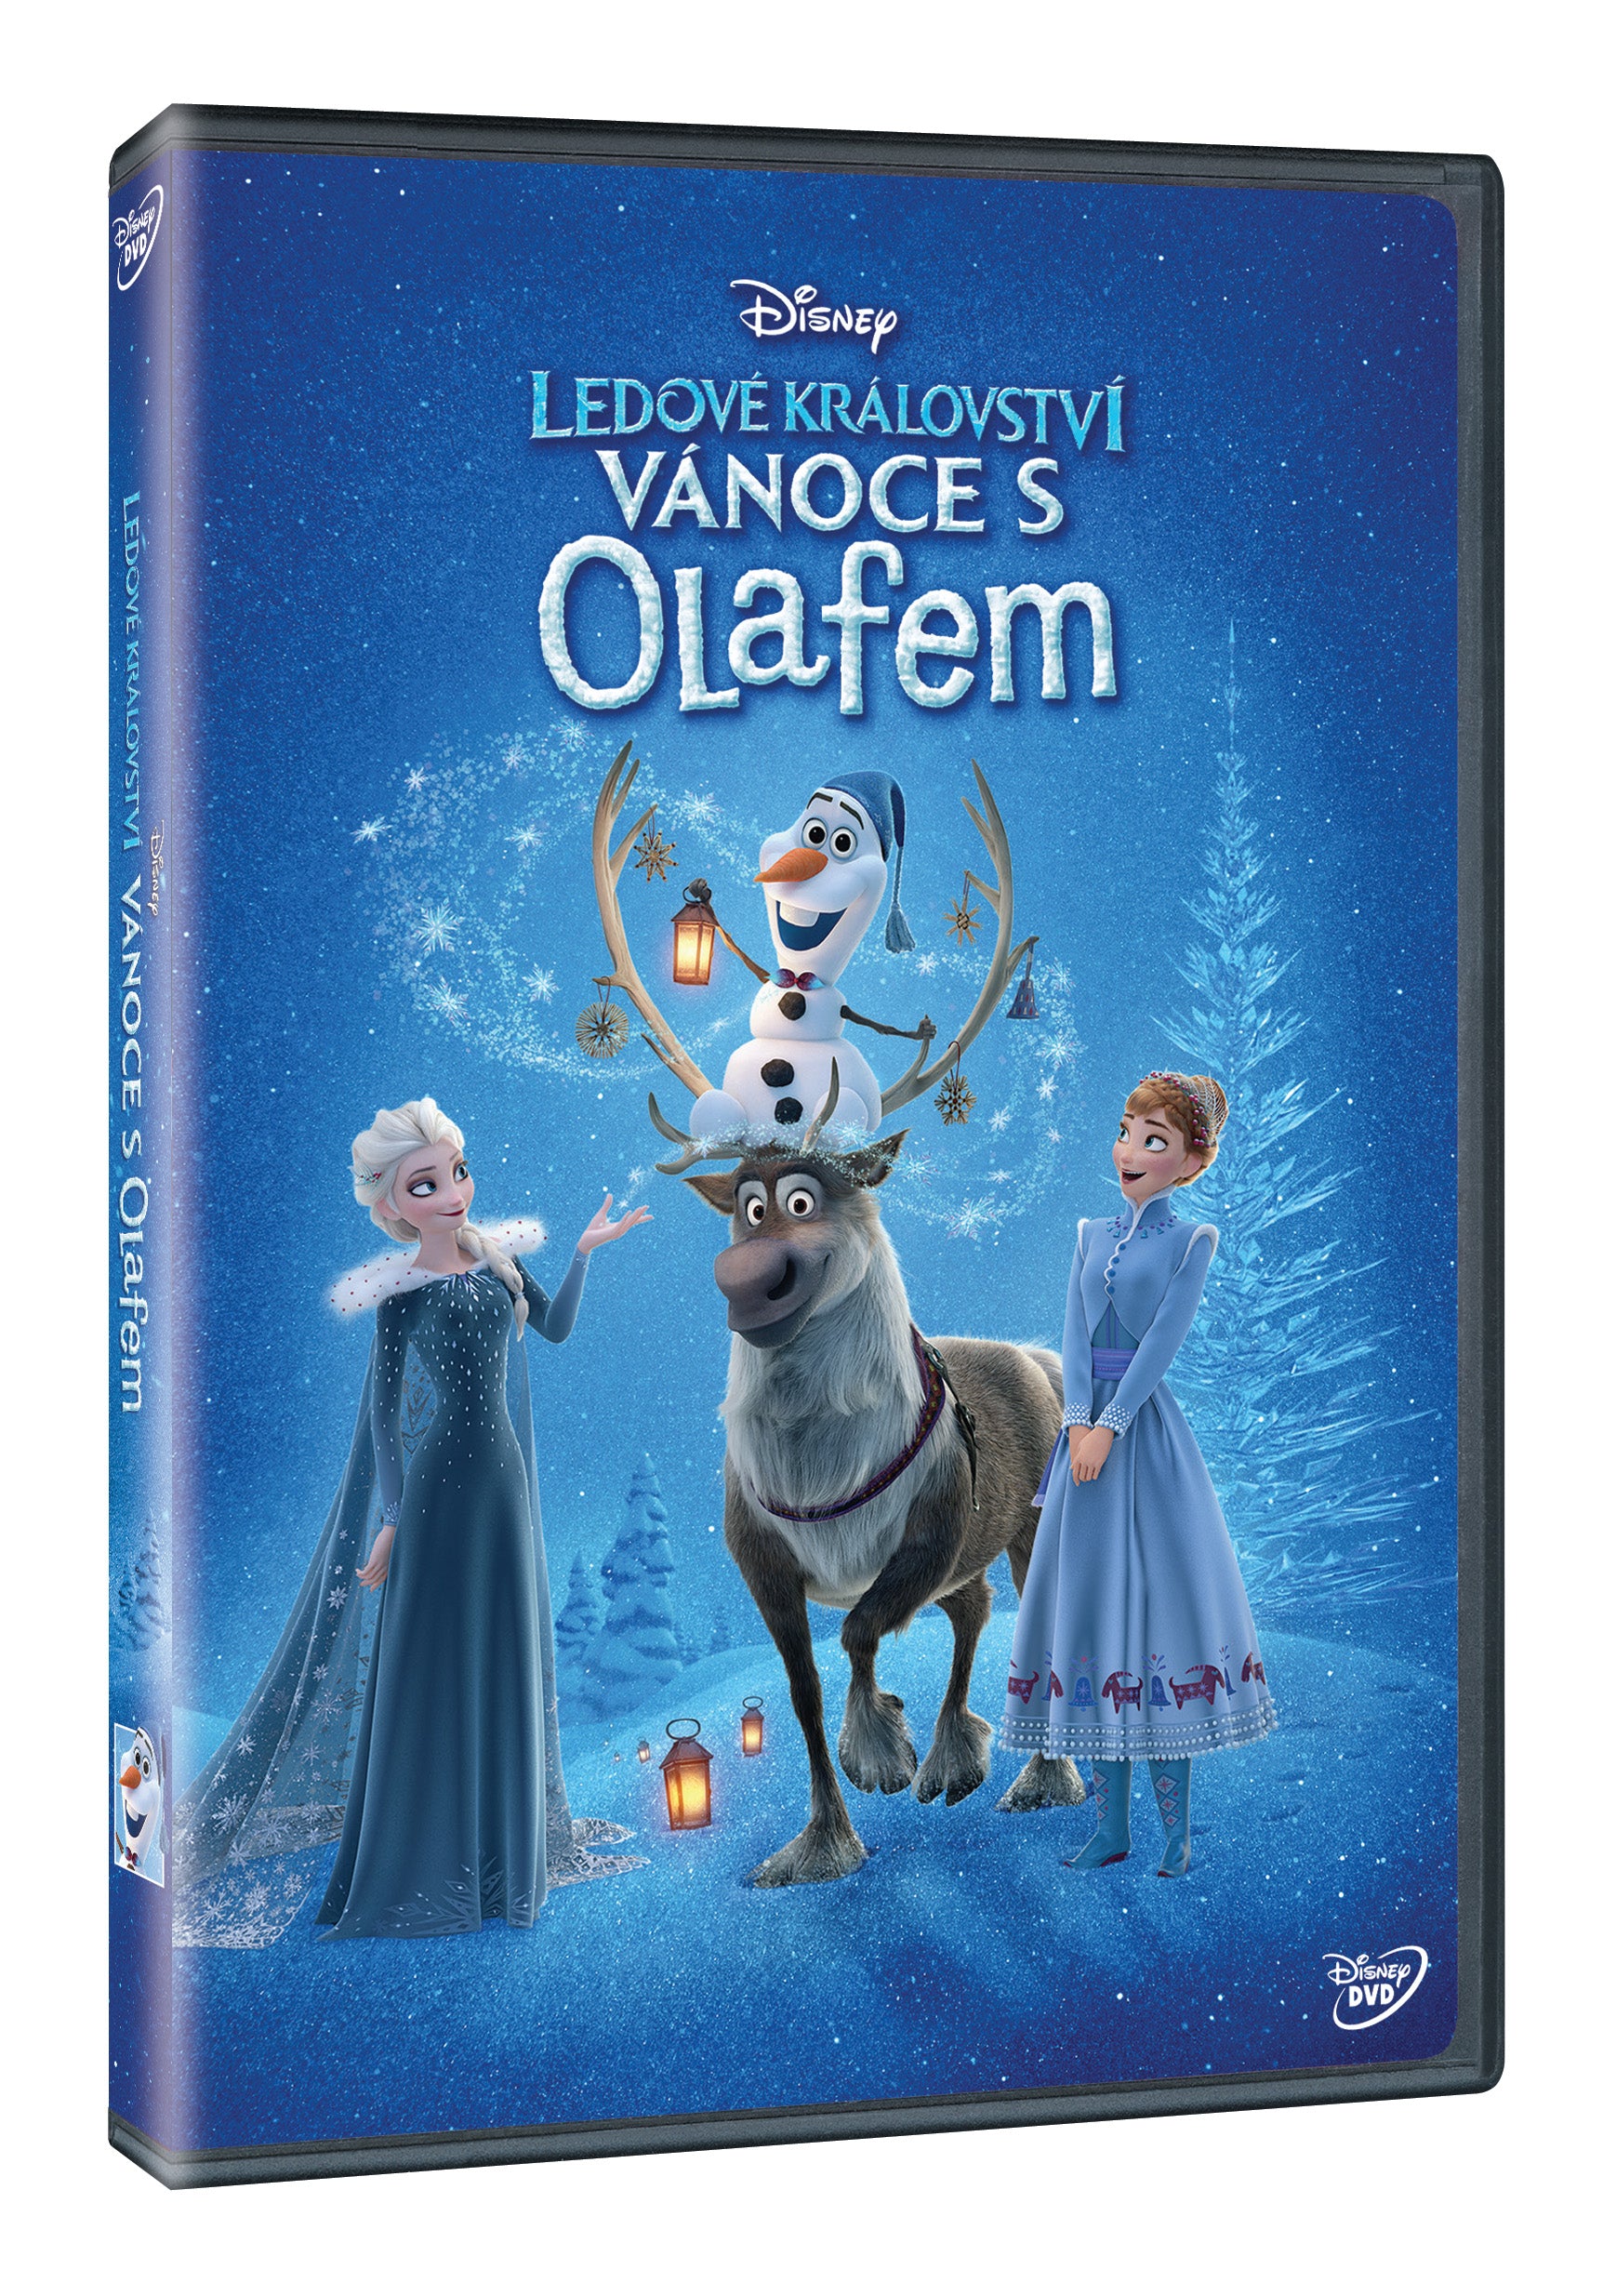 Ledove kralovstvi: Vanoce s Olafem DVD / Olaf's Frozen Adventure